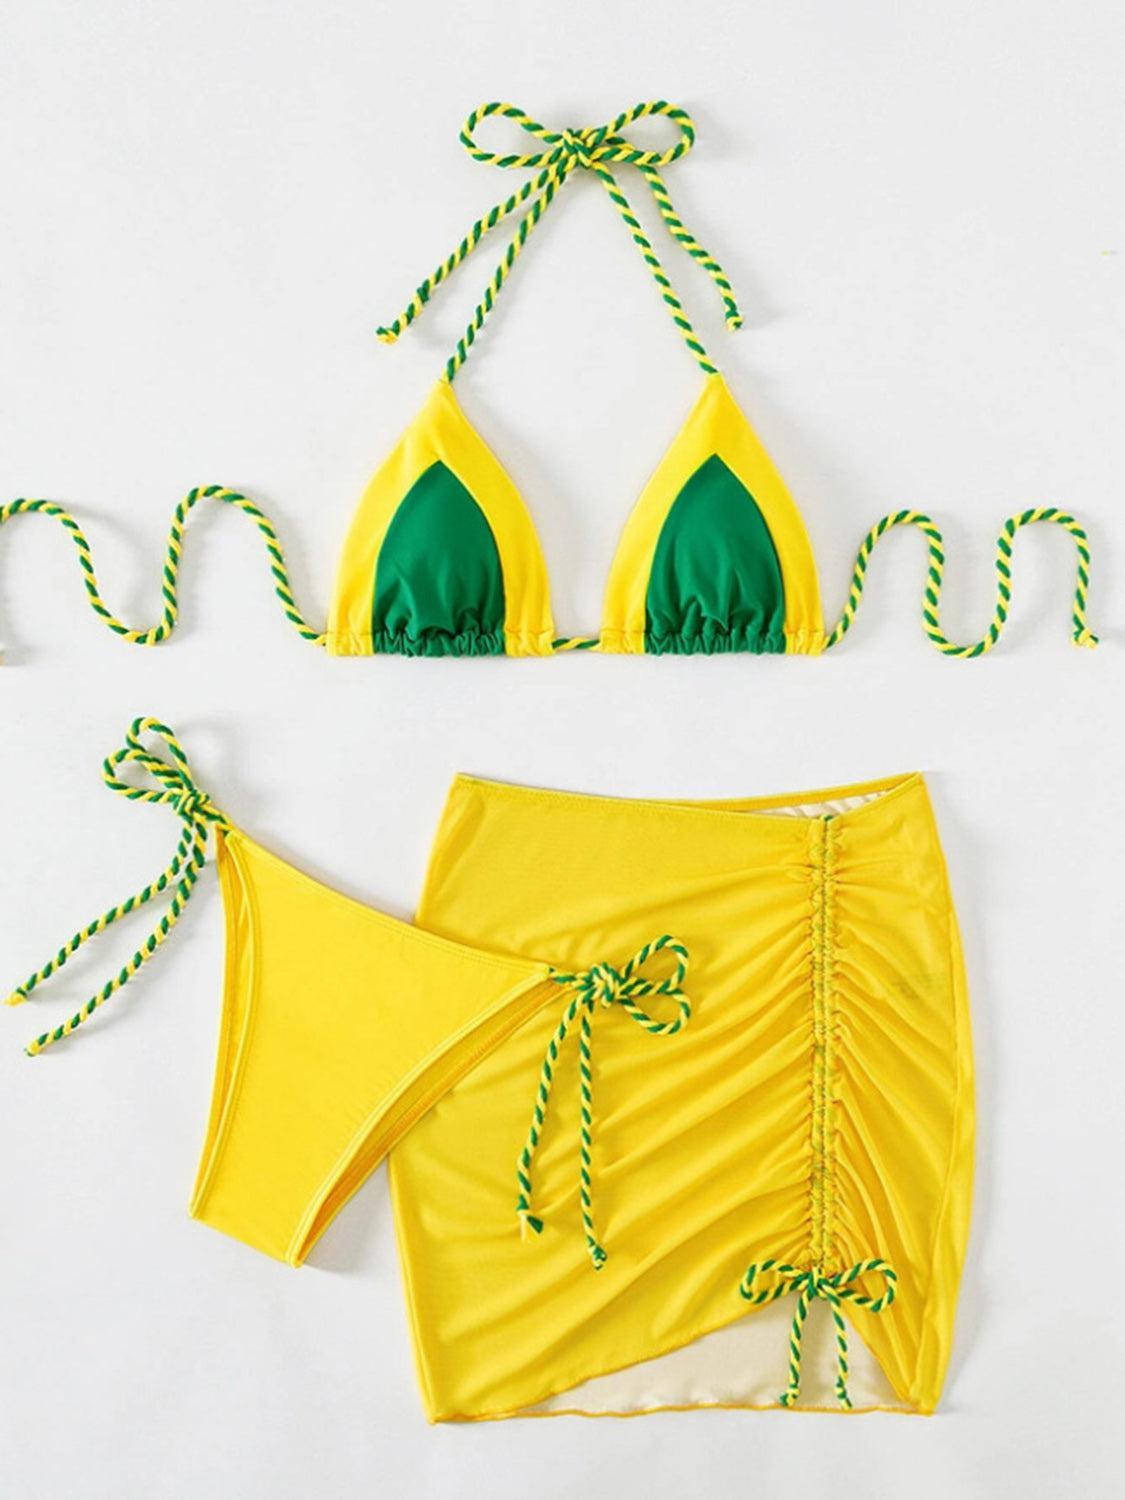 a yellow bikini with green straps and a green bikini top